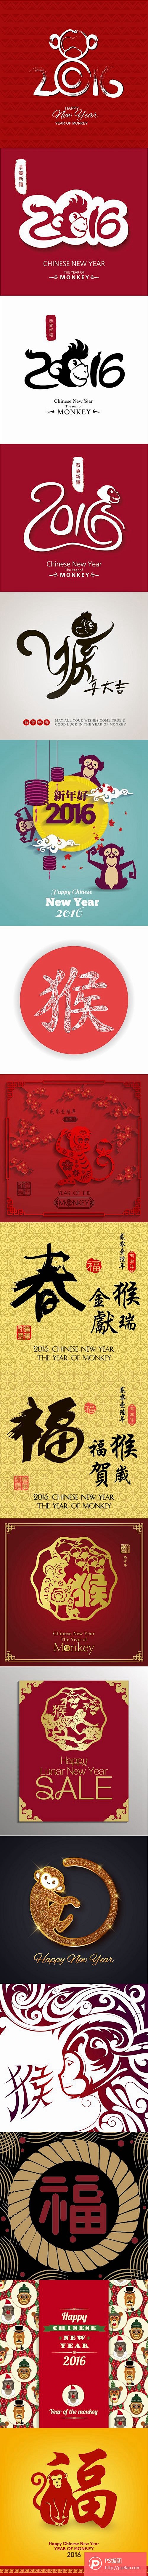 中国传统春节新年2016猴年矢量设计素材...